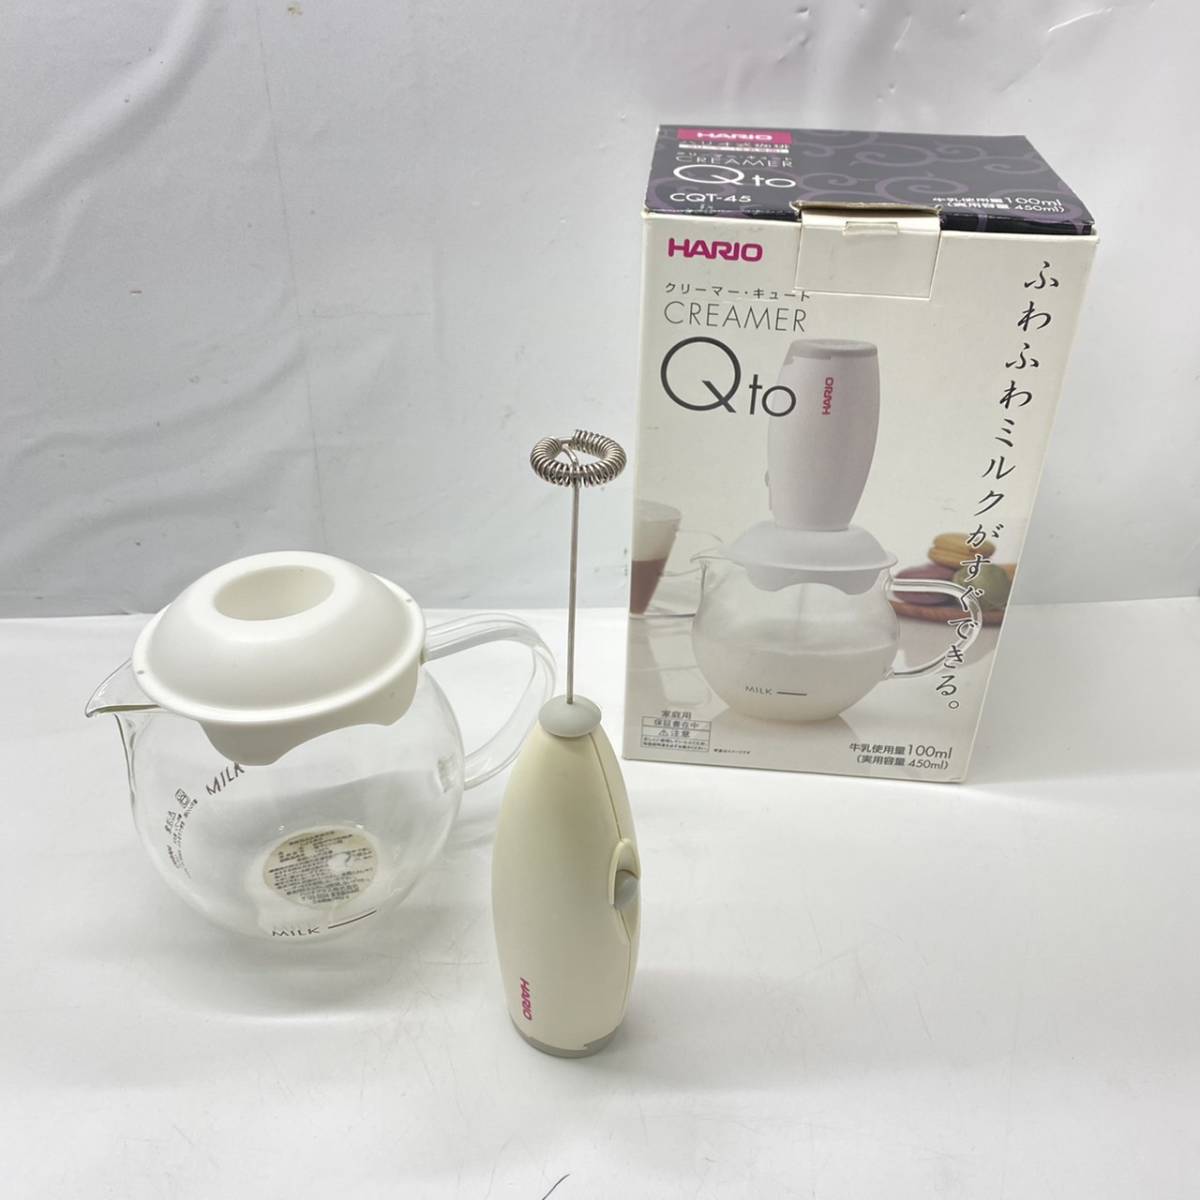  бесплатная доставка g04513 HARIO молоко венчик сливочник симпатичный CQT-45